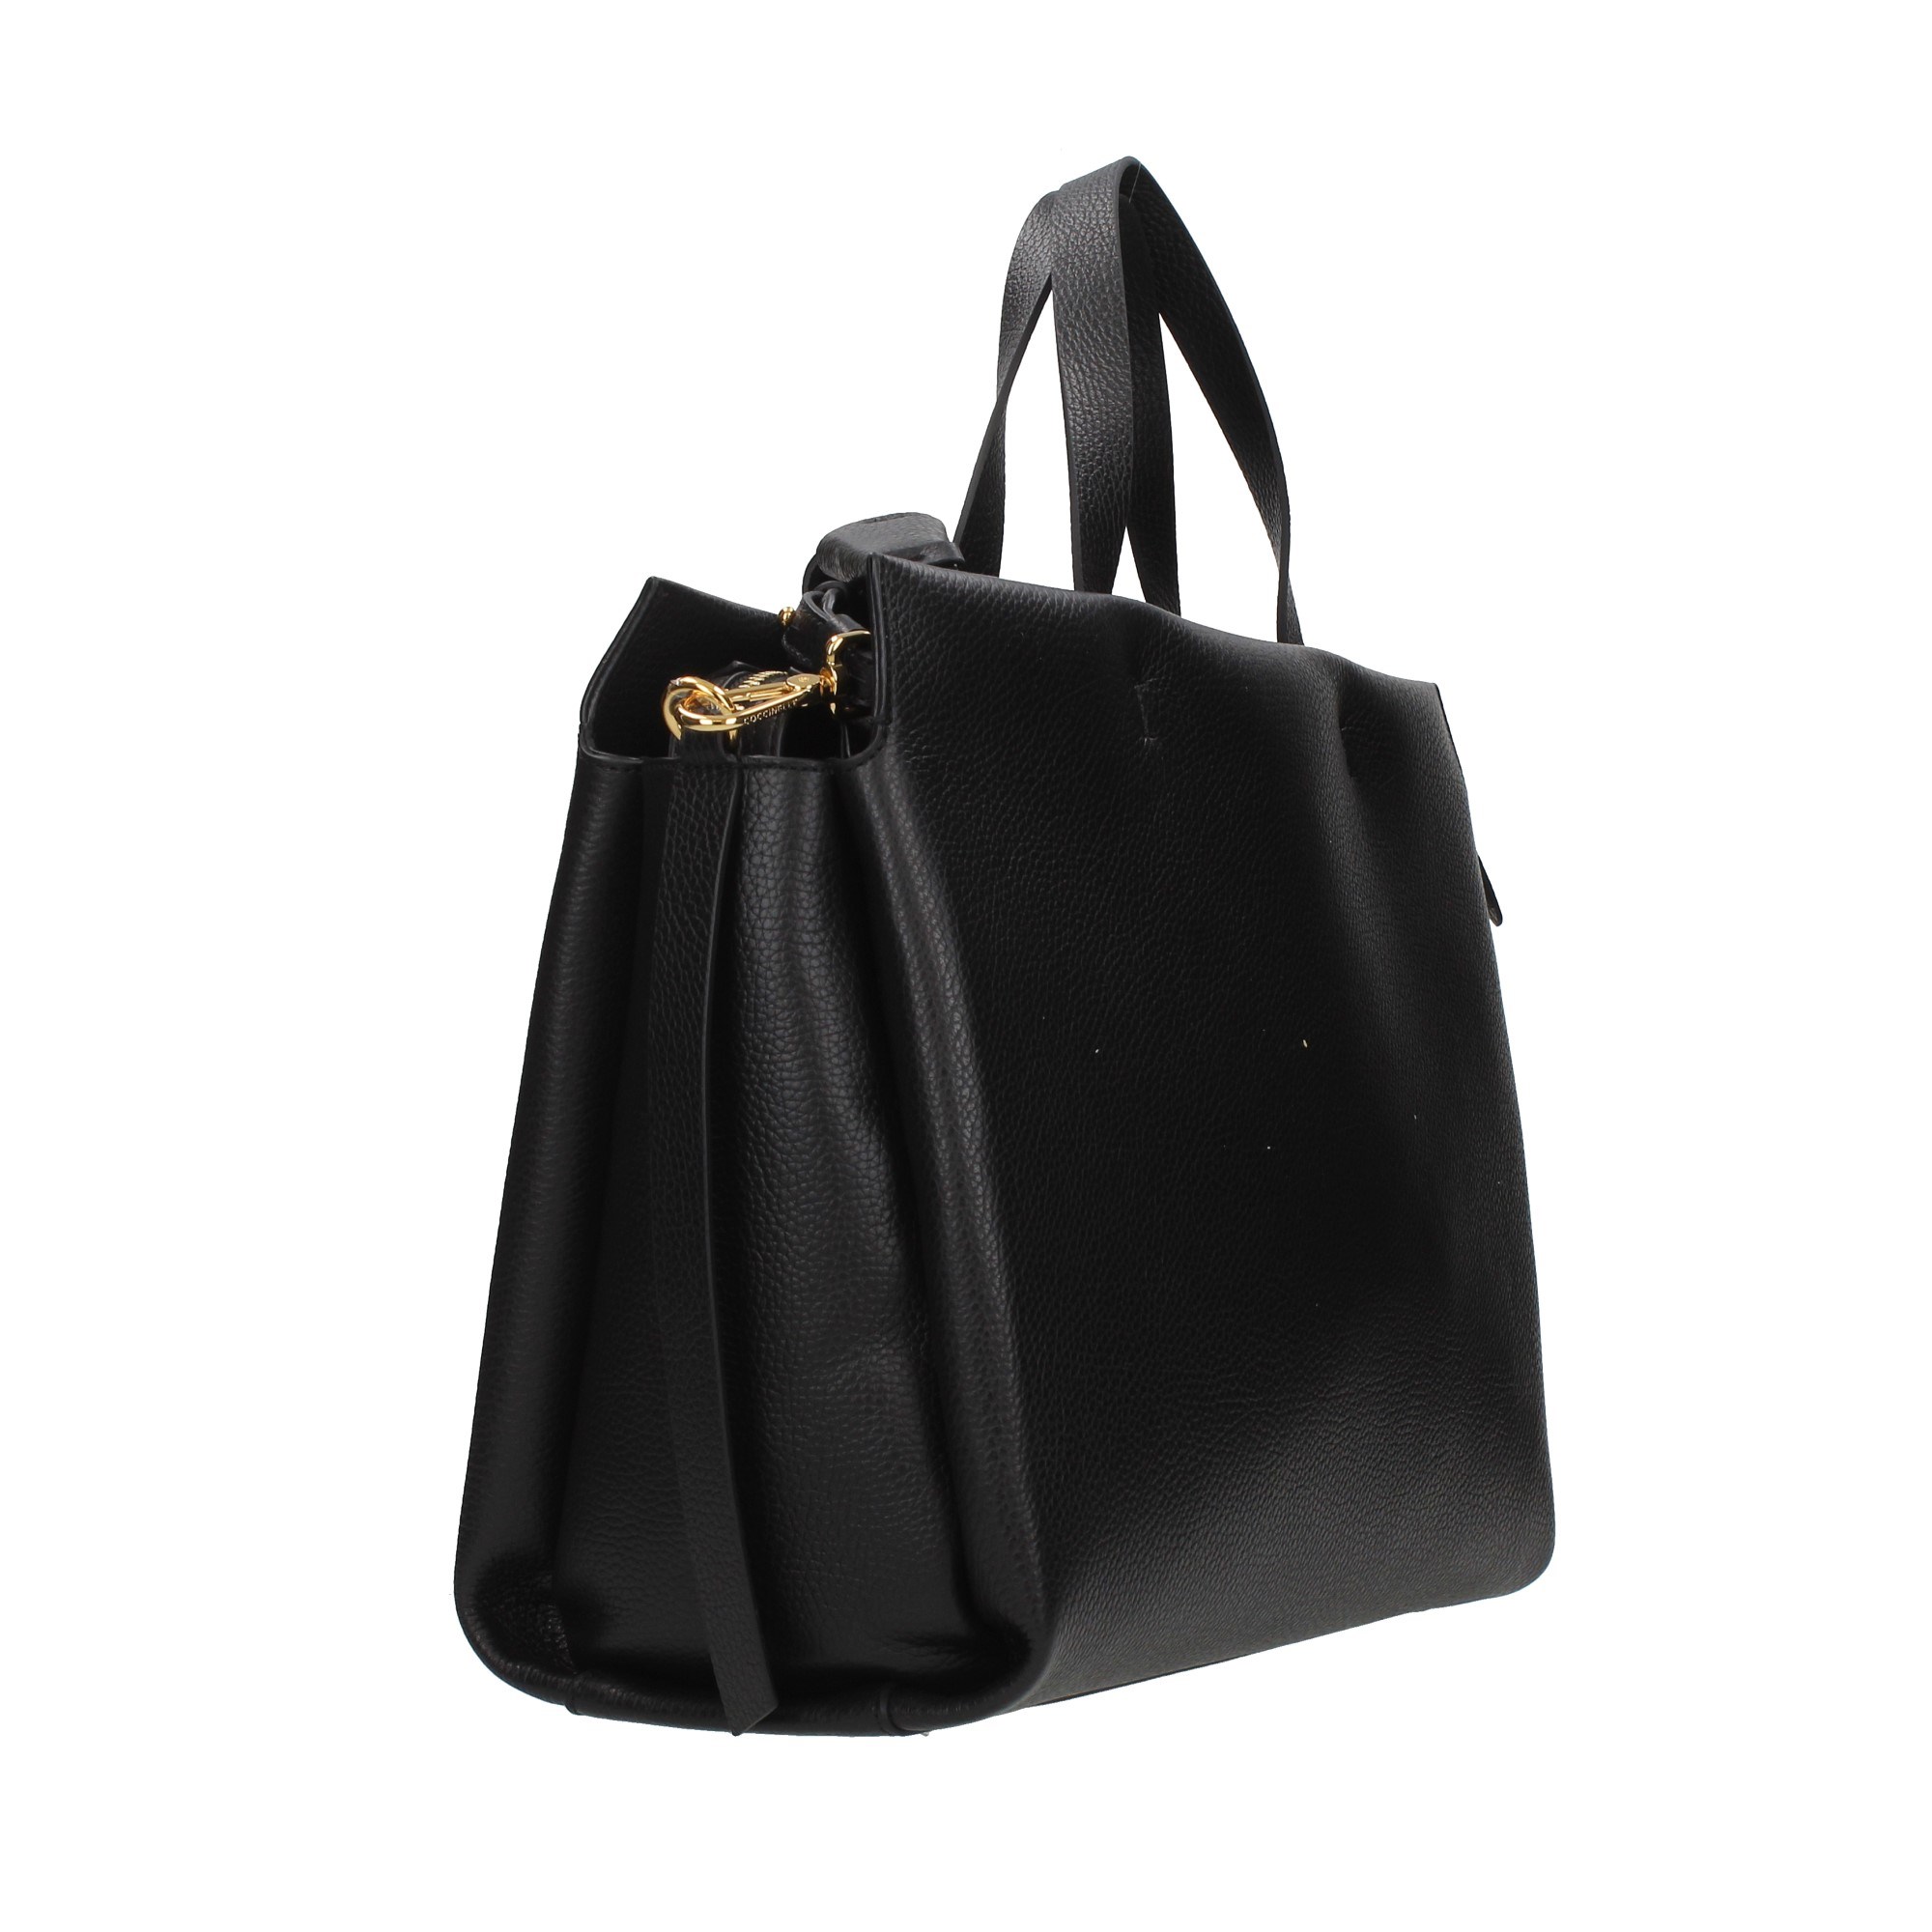 Coccinelle Accessories Women Shoulder Bags Black N68 180201